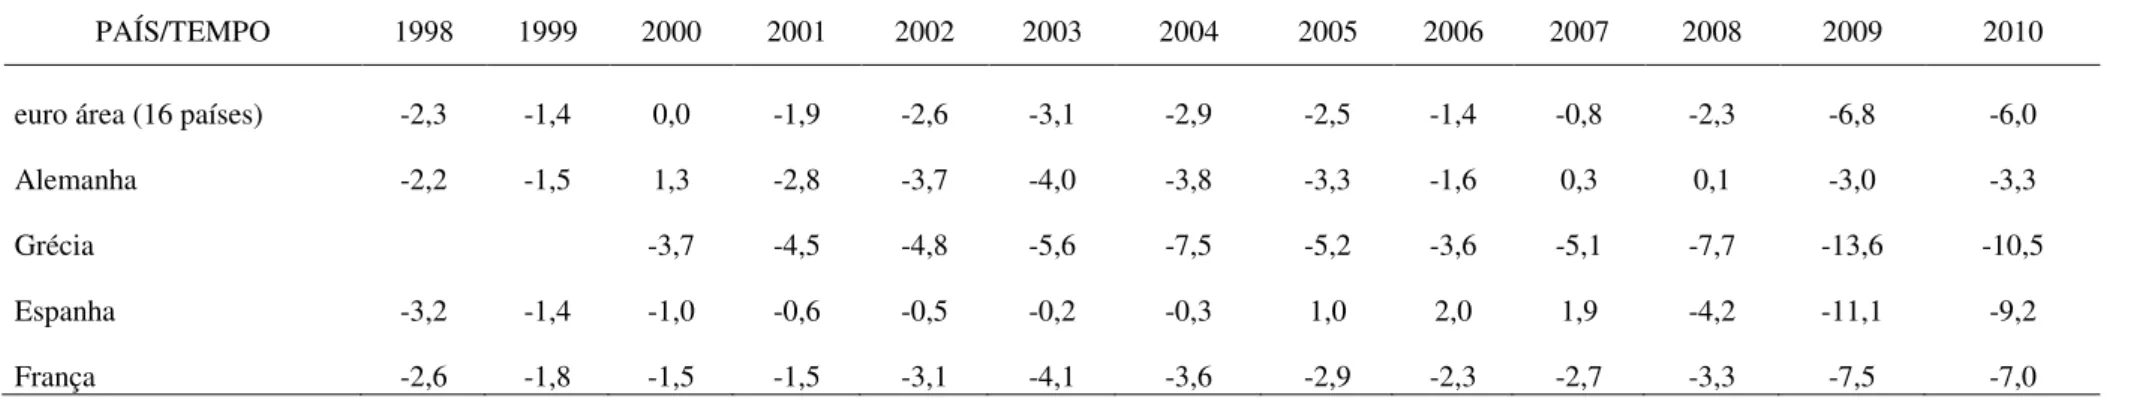 Tabela A-2: Resultado orçamentário de Governos na Zona do Euro: Percentual do PIB 